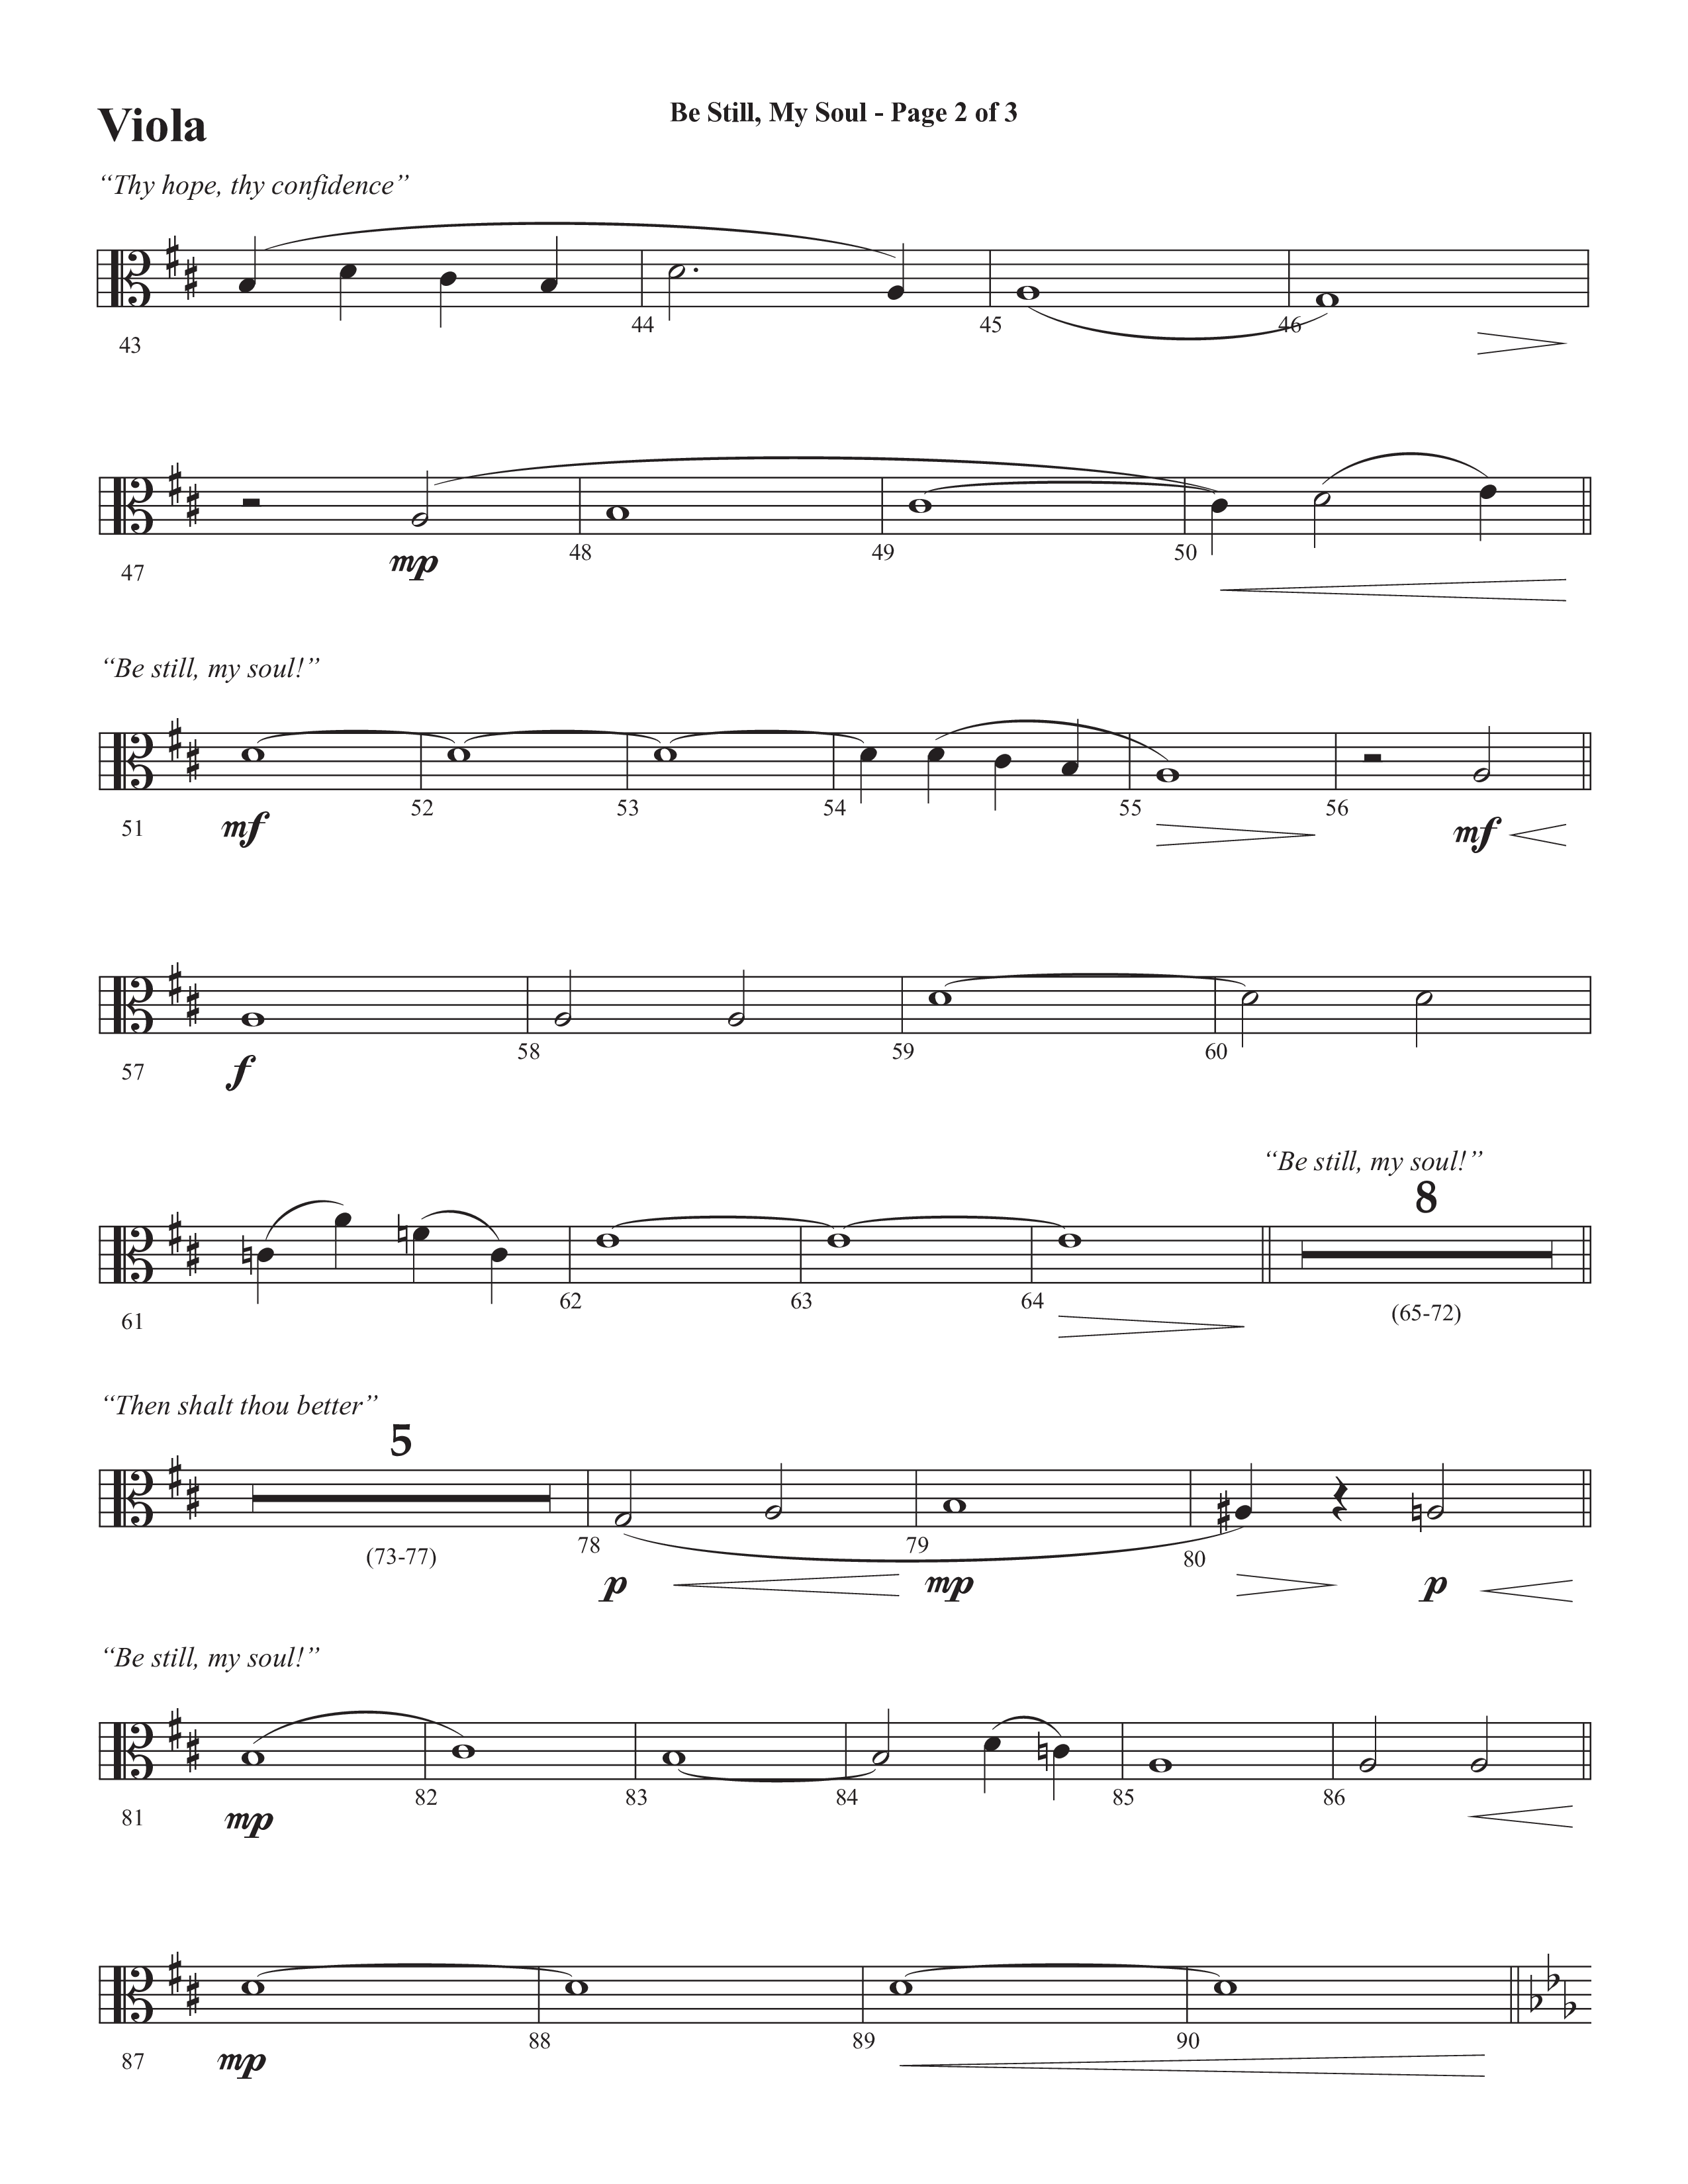 Be Still My Soul (Choral Anthem SATB) Viola (Semsen Music / Arr. Cliff Duren)